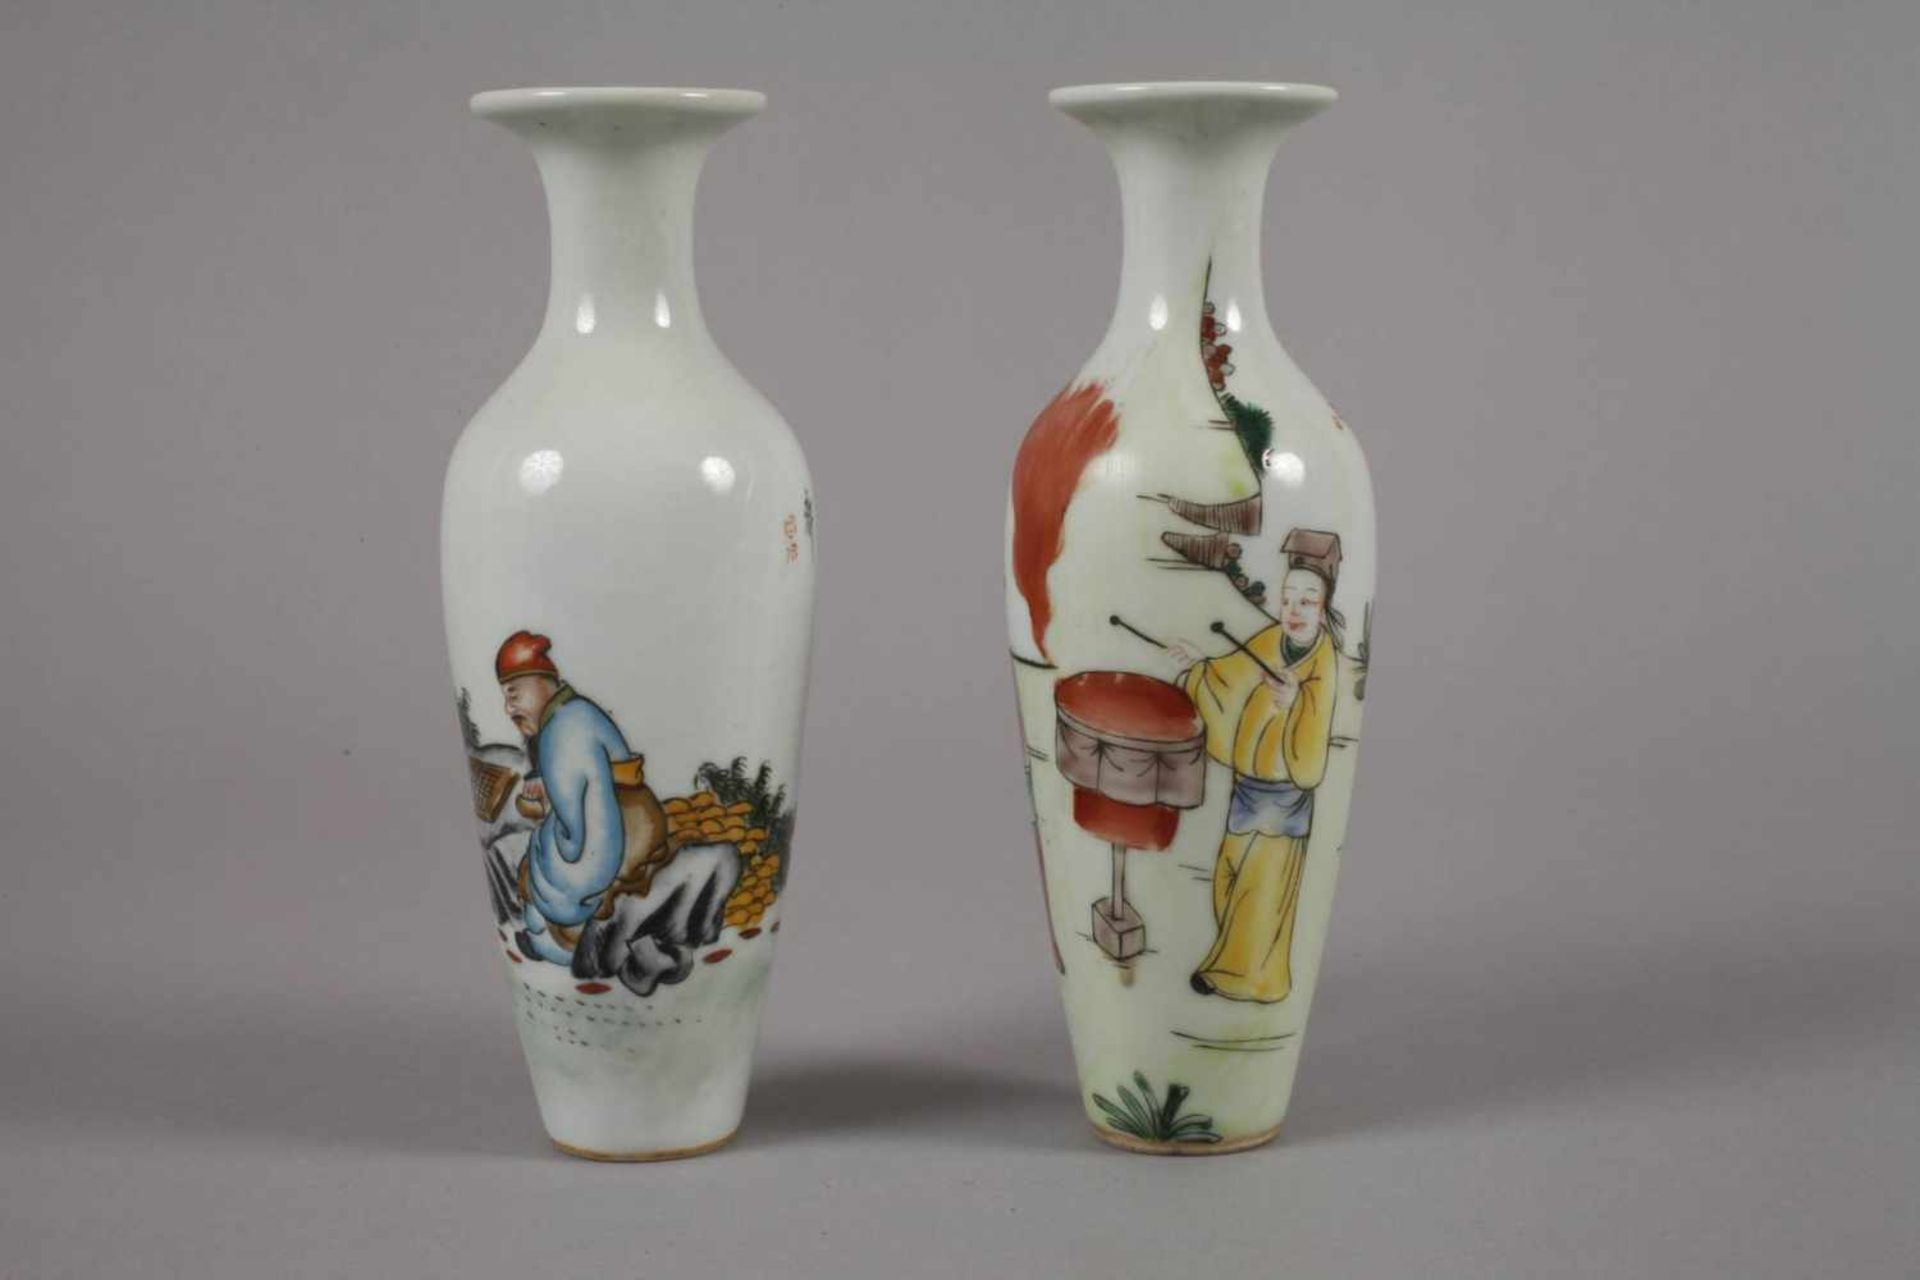 Sechs Vasen China1960er bis 1970er Jahre, gemarkt und signiert, Weißporzellan in polychromer - Bild 8 aus 12